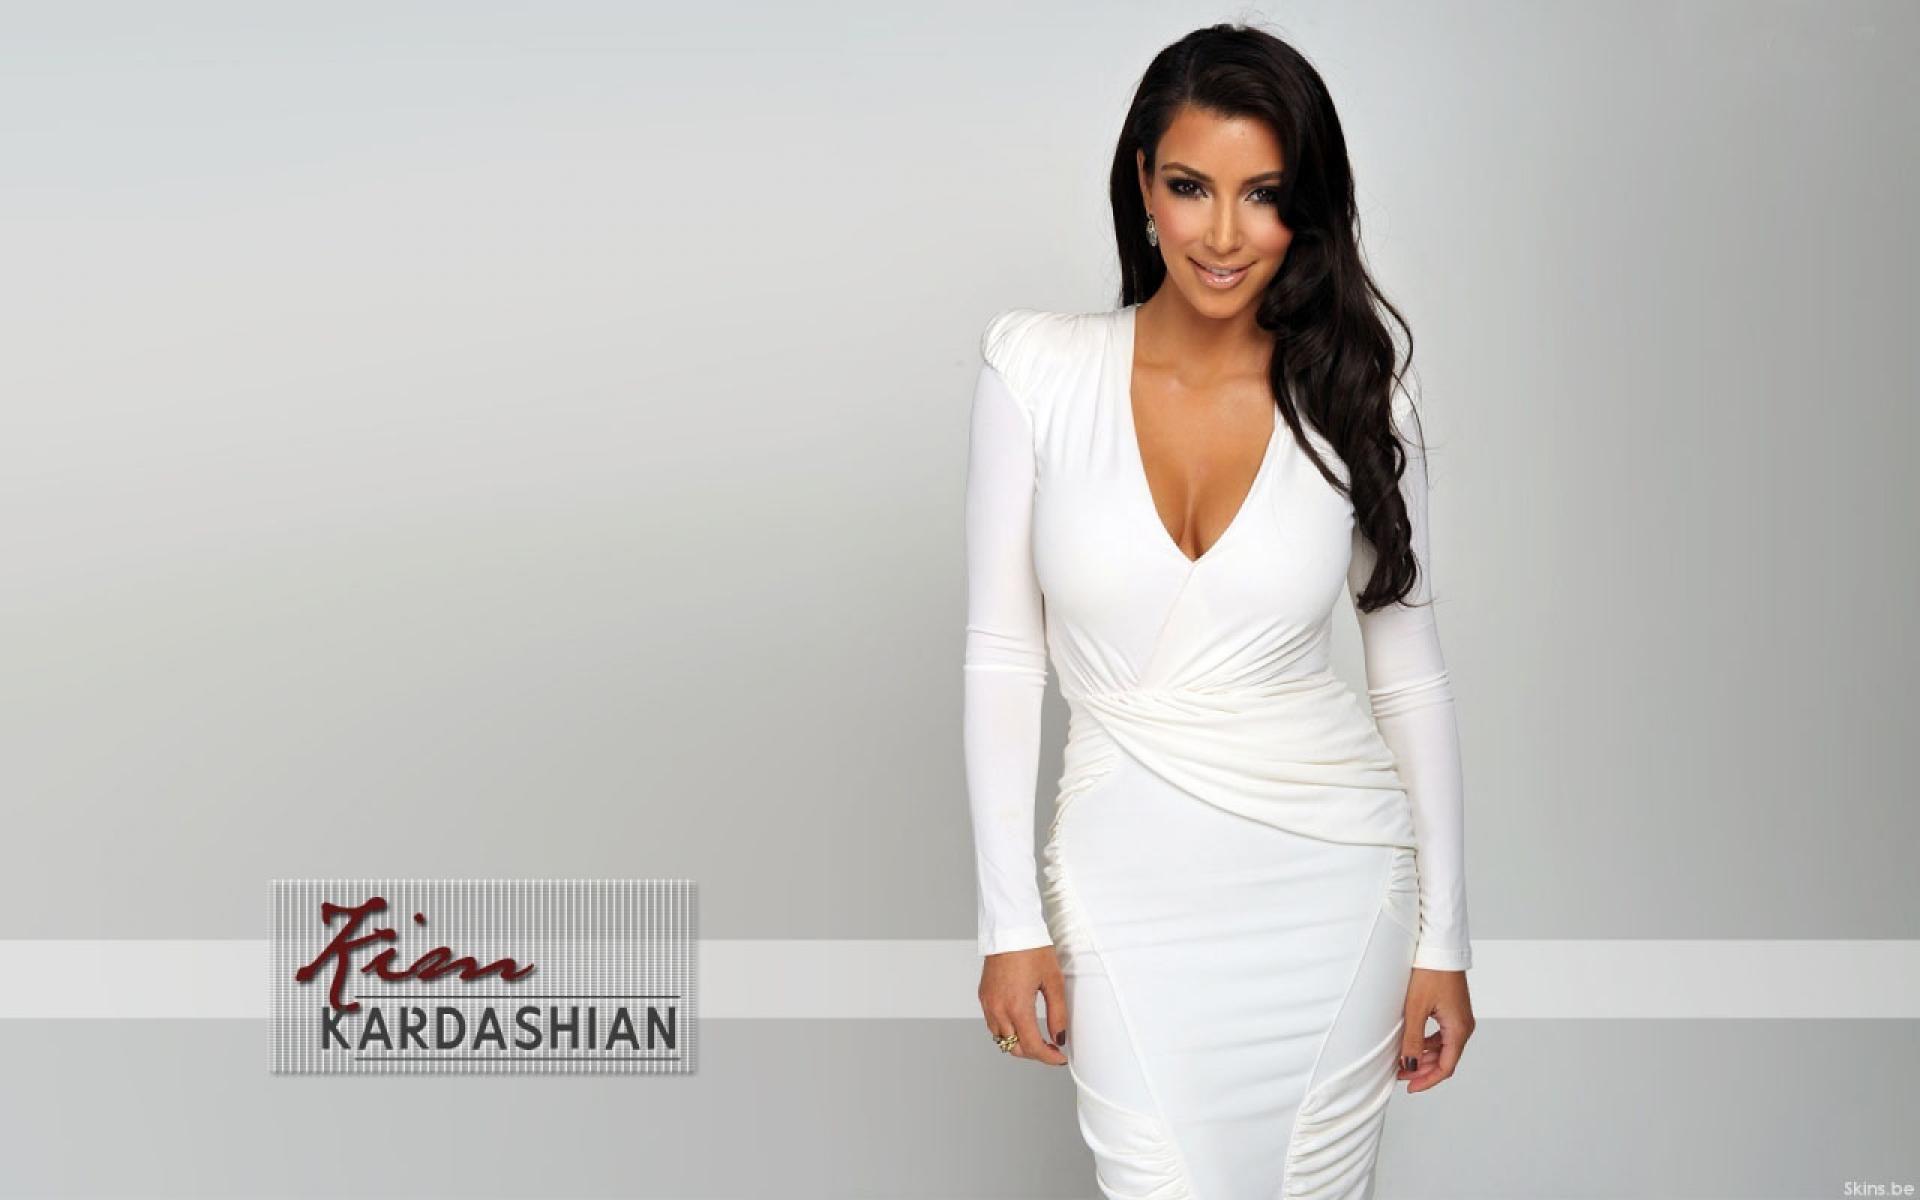 Kim Kardashian White Dress wallpaper. Kim Kardashian White Dress